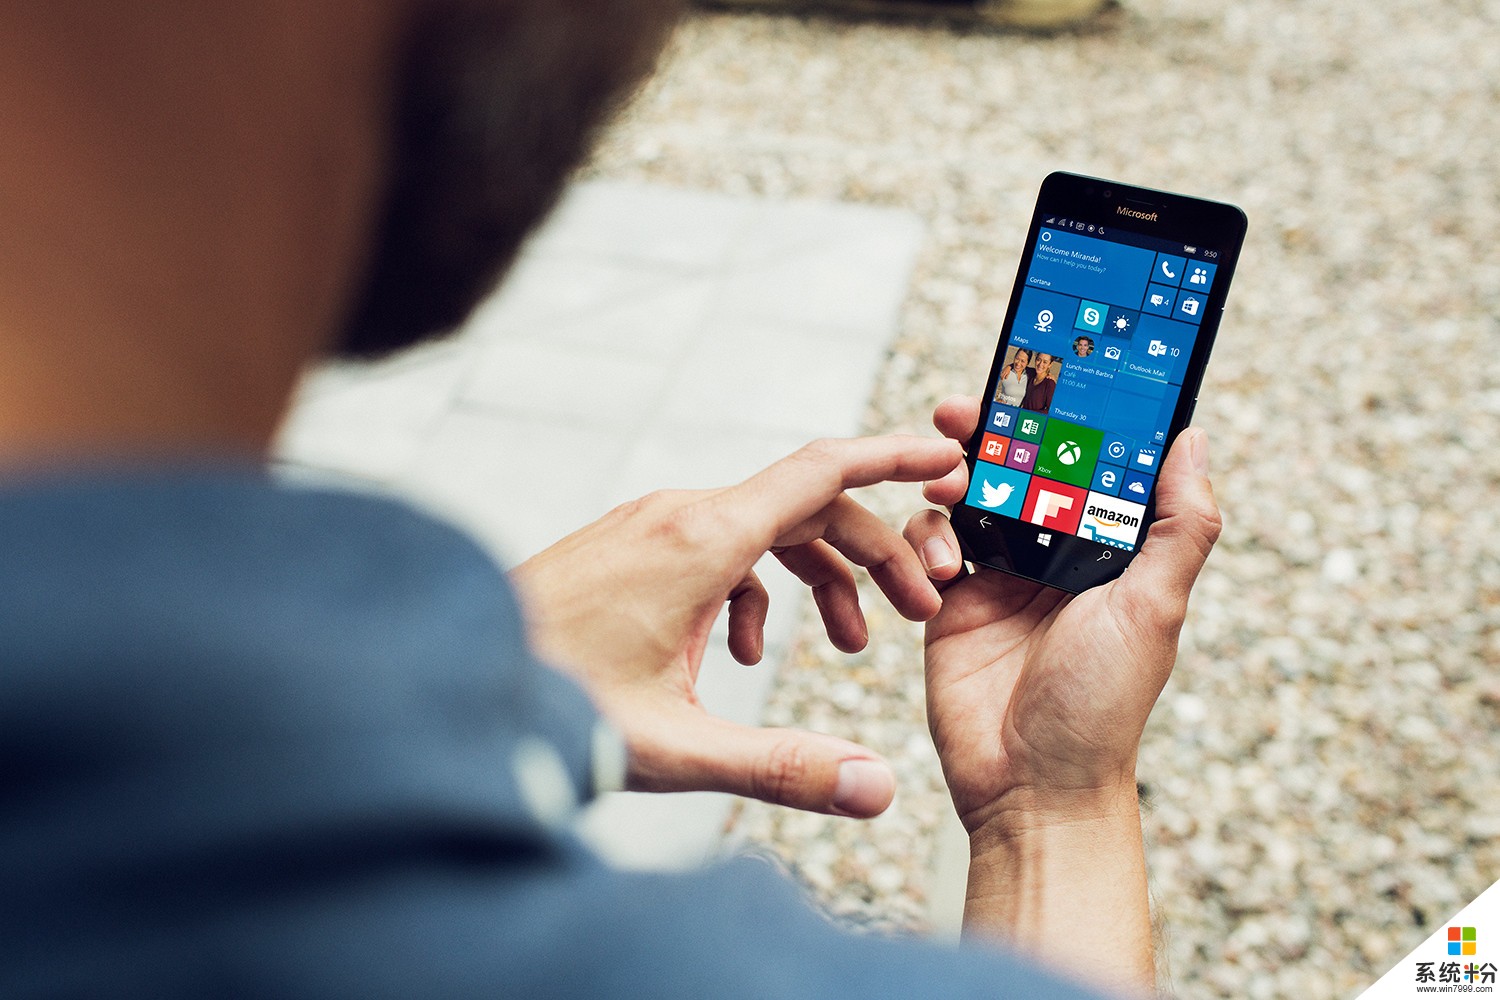 还没等到 Surface Phone, 微软就已经打算放弃 Windows 10 Mobile 了